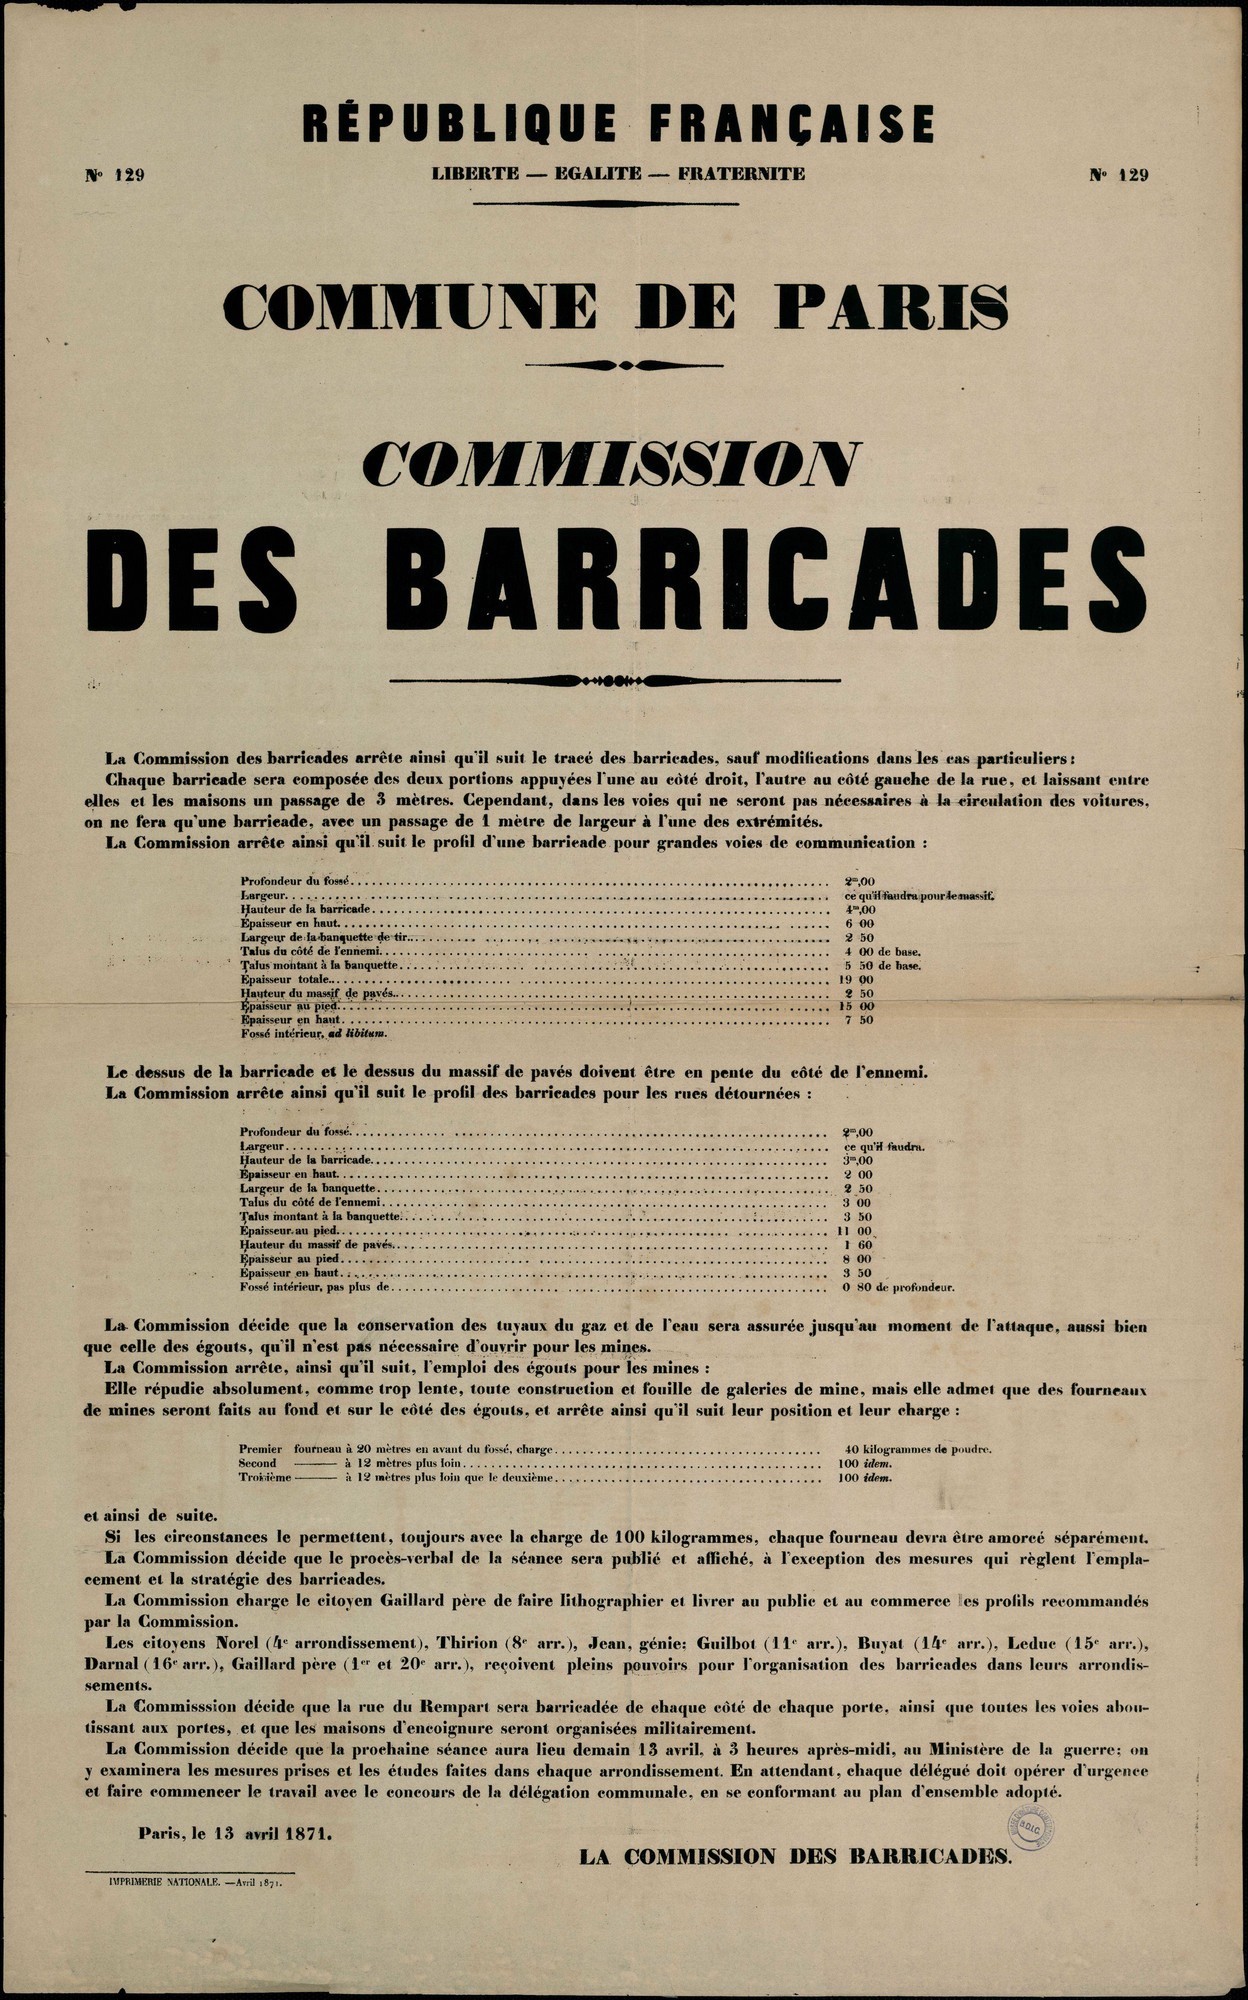 Affiche de la Commune de Paris N° 129 du 13 avril 1871 - Commission des barricades